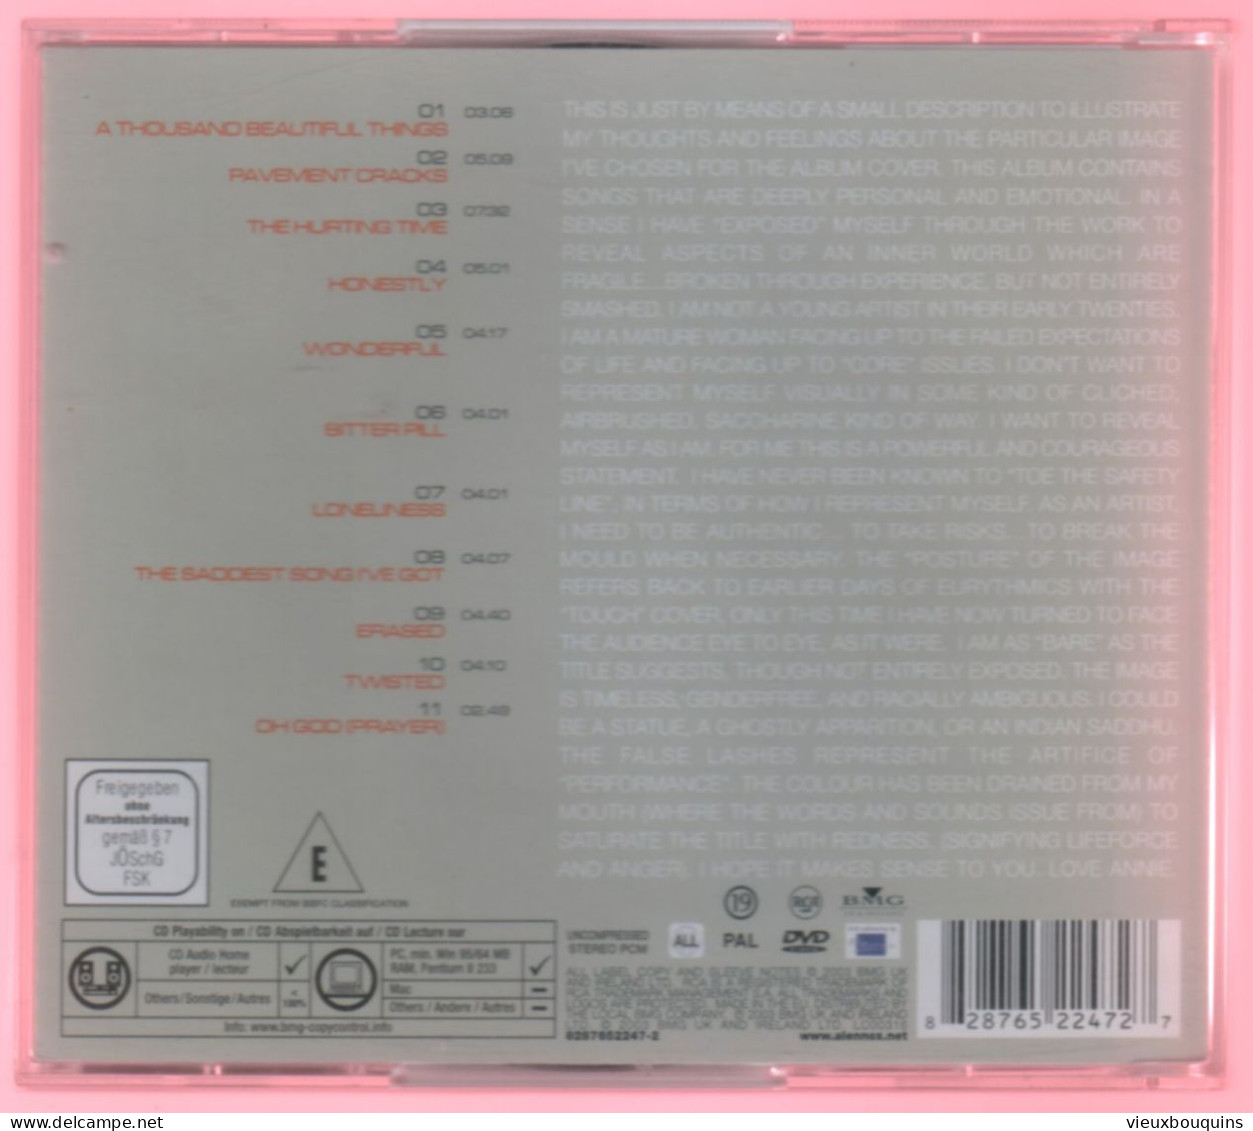 ANNIE LENNOX : BARE (cd + Dvd . Voir Titres Sur Scan) - Autres - Musique Anglaise